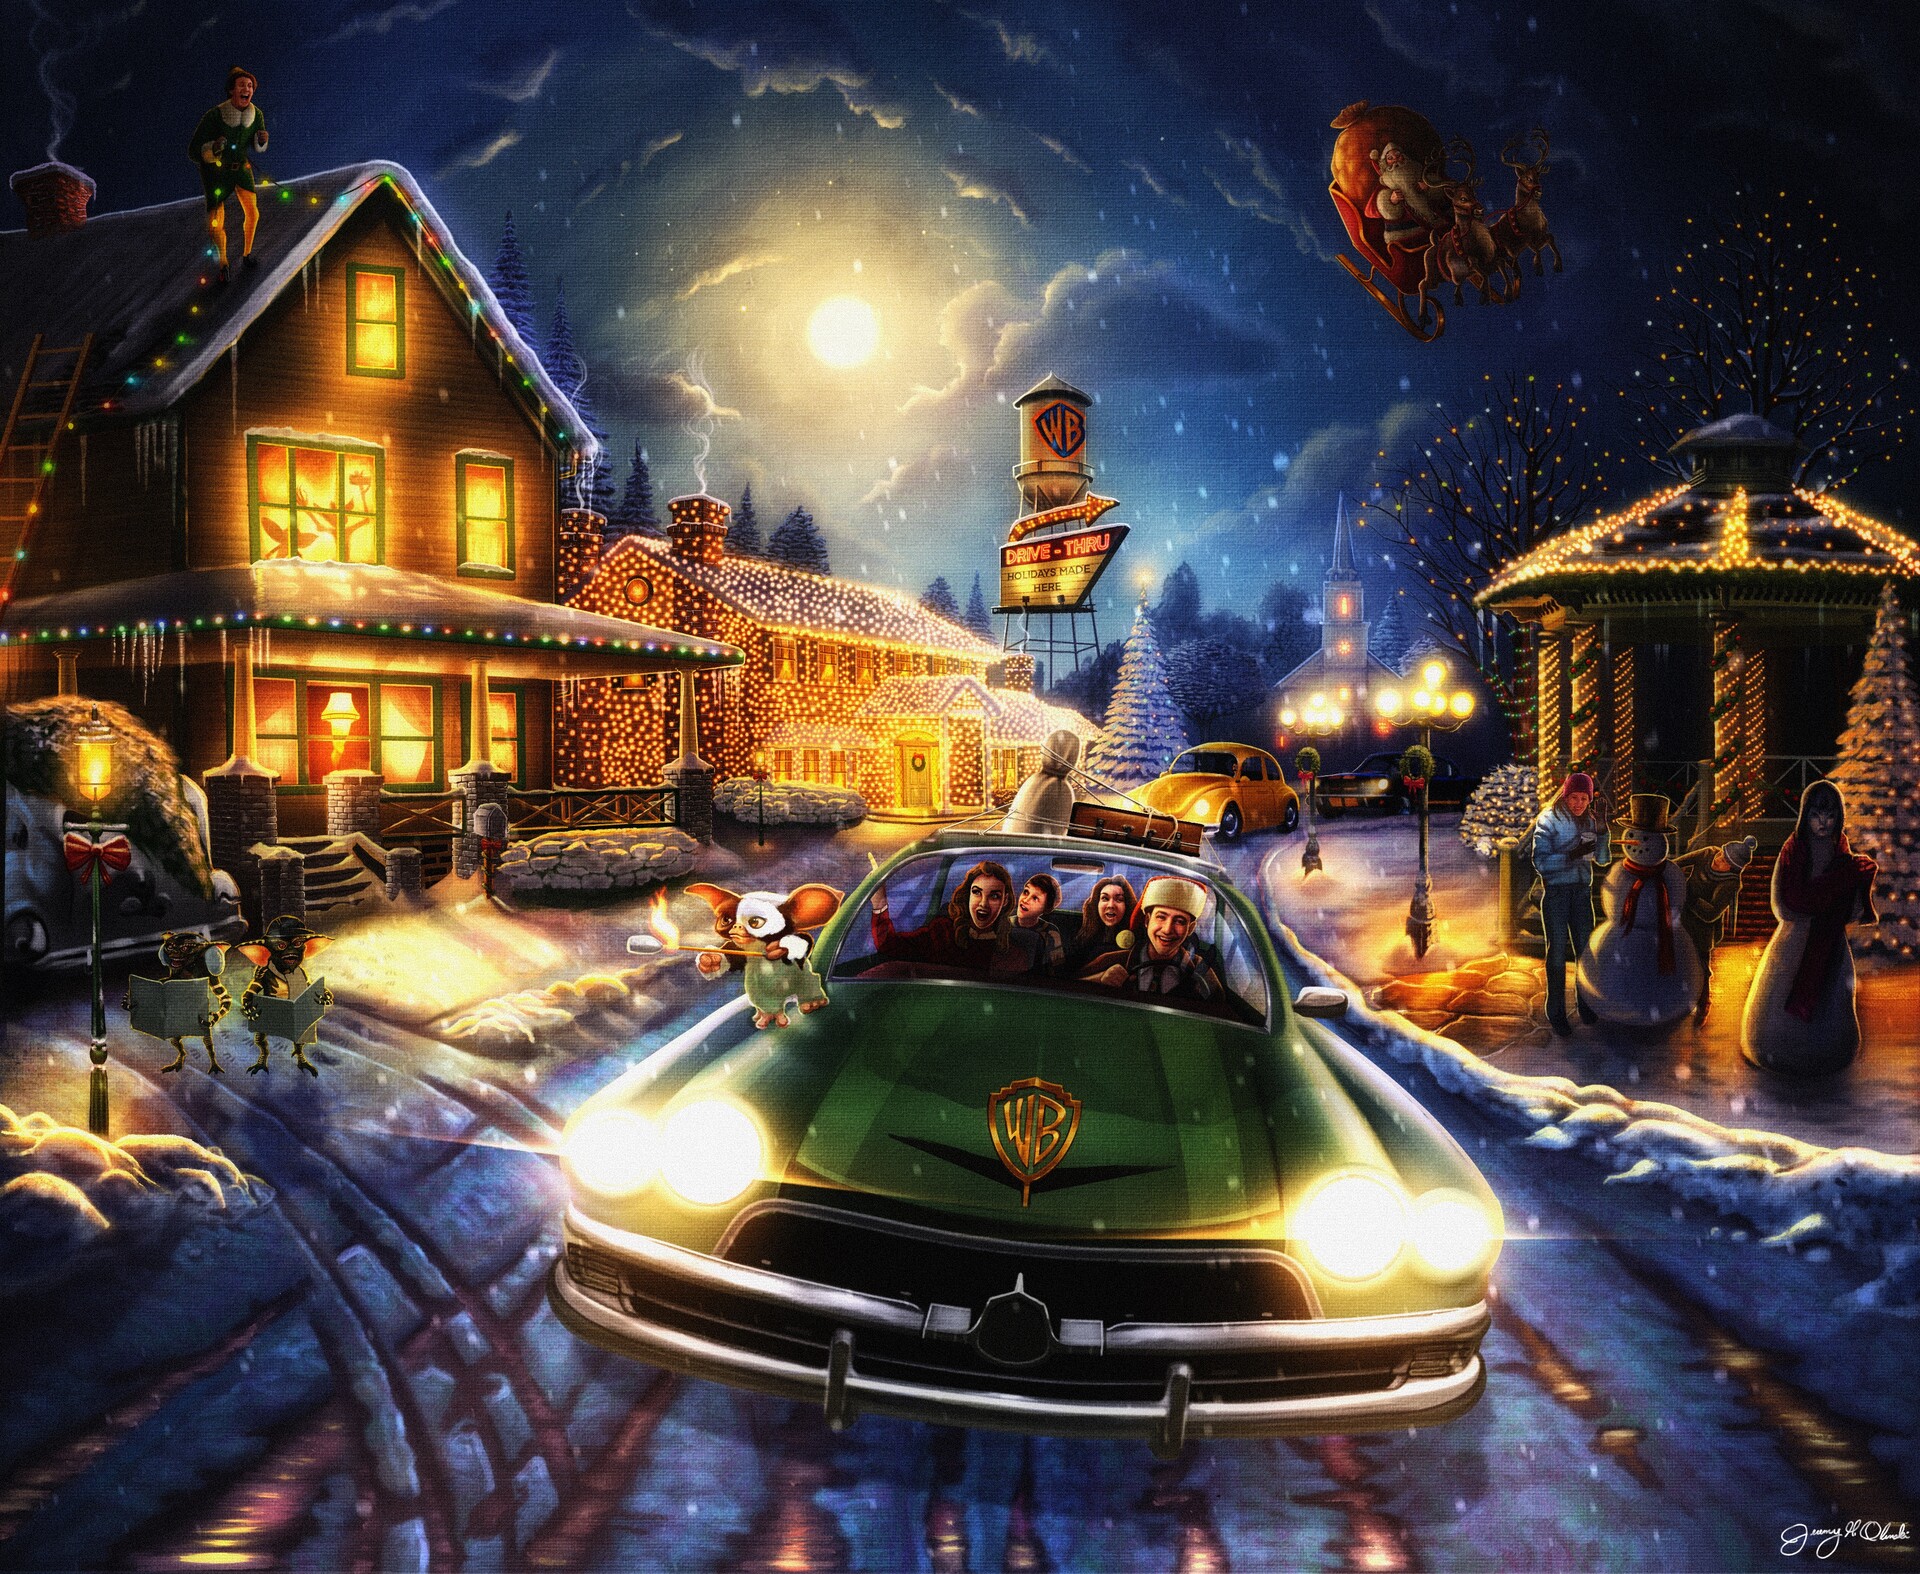 ArtStation Warner Bros. Holidays concept art